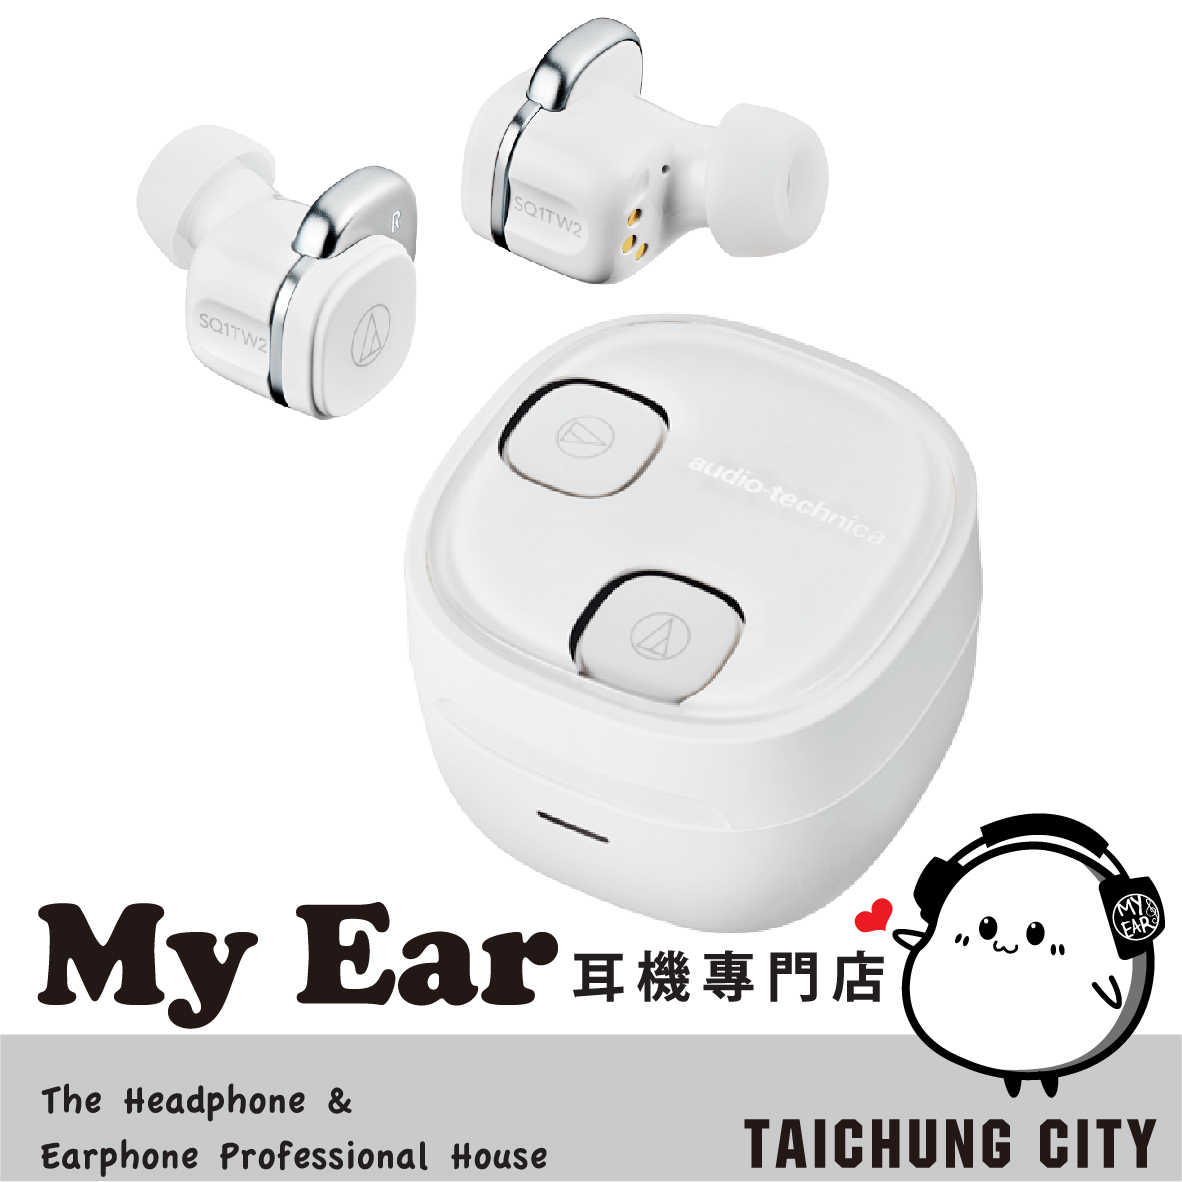 鐵三角 ATH-SQ1TW2 白色 低延遲 可單耳 IPX5 真無線 藍芽 耳機 | My Ear 耳機專門店